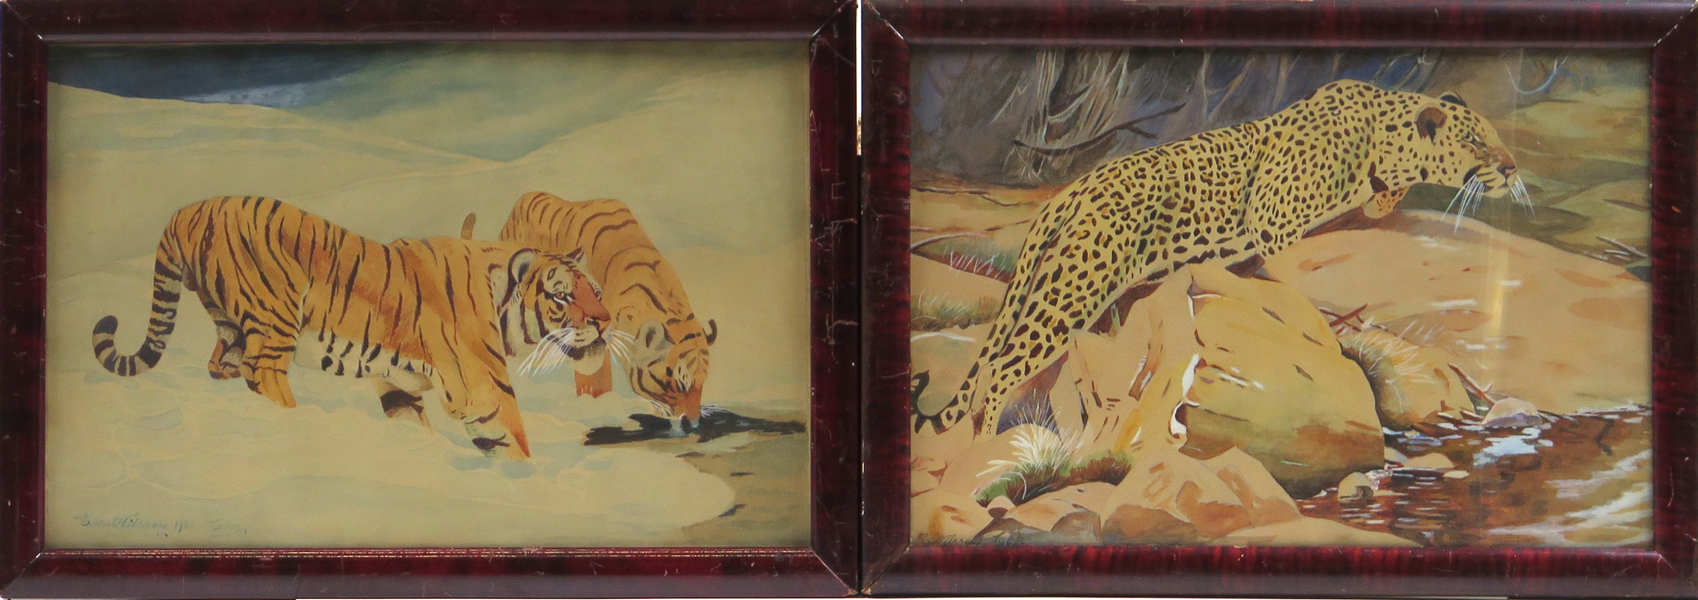 Kuhnert, Wilhelm, kopia efter, akvareller, 1 par, "Manchurisk tiger" respektive "Leopard", signerade Ernst Nilsson, synlig pappersstorlek 28 x 42 cm_26128a_8db0ea0d07d298e_lg.jpeg